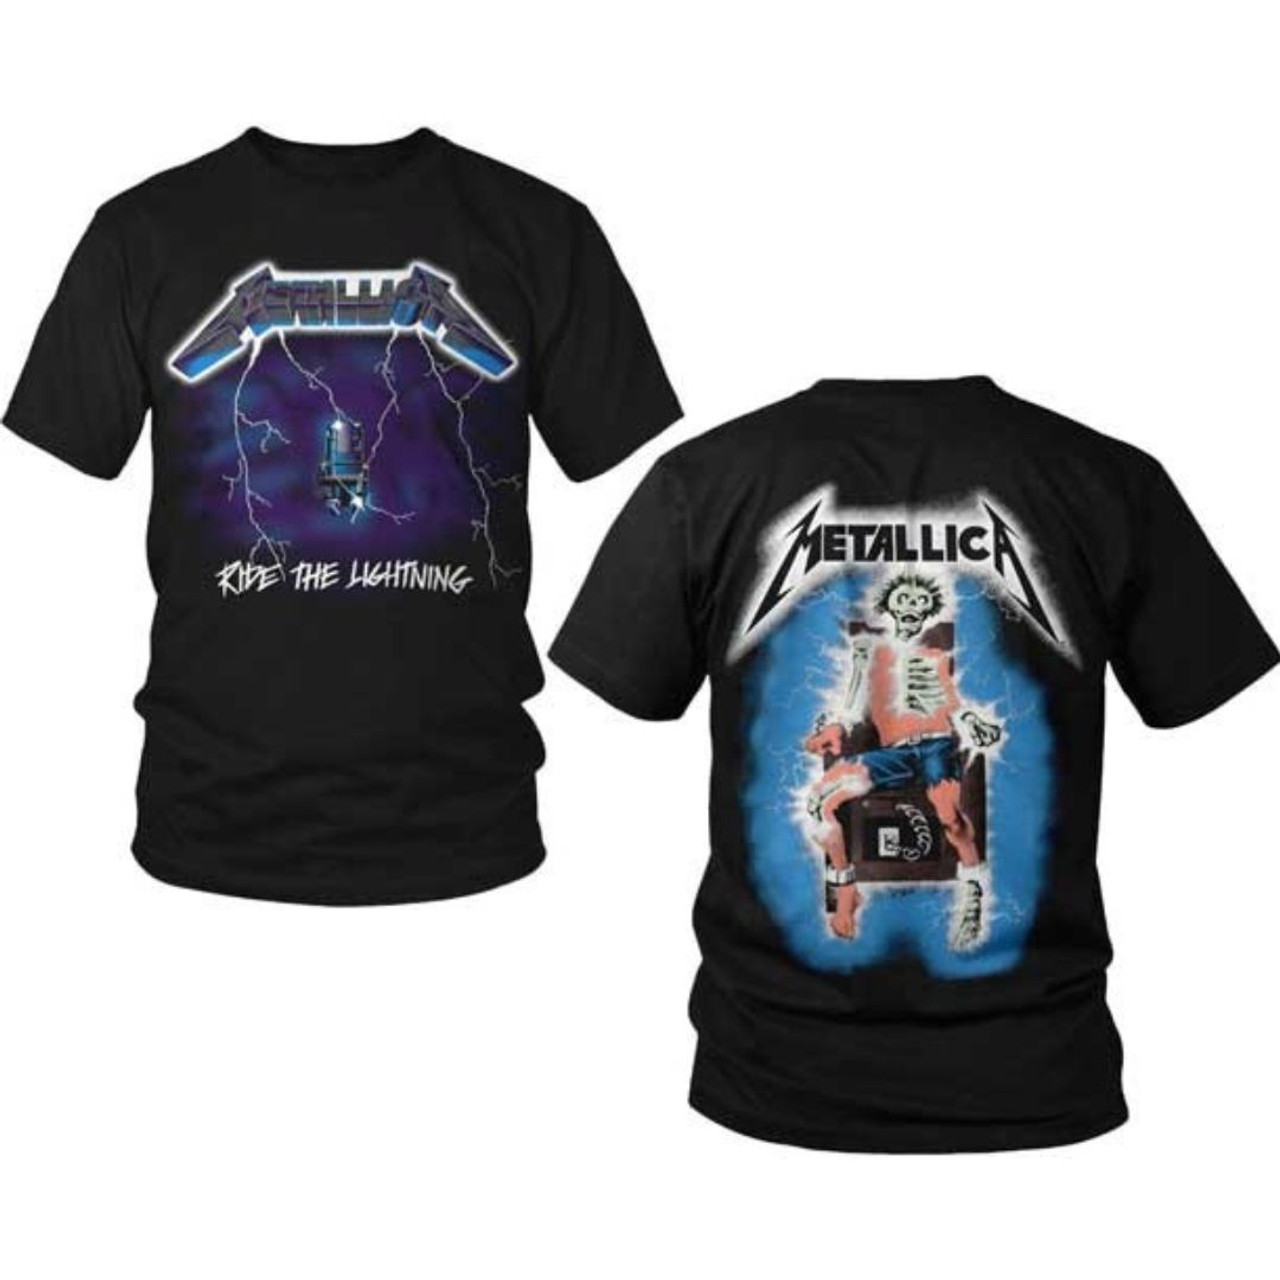 Ride Lightning Metallica T-Shirt